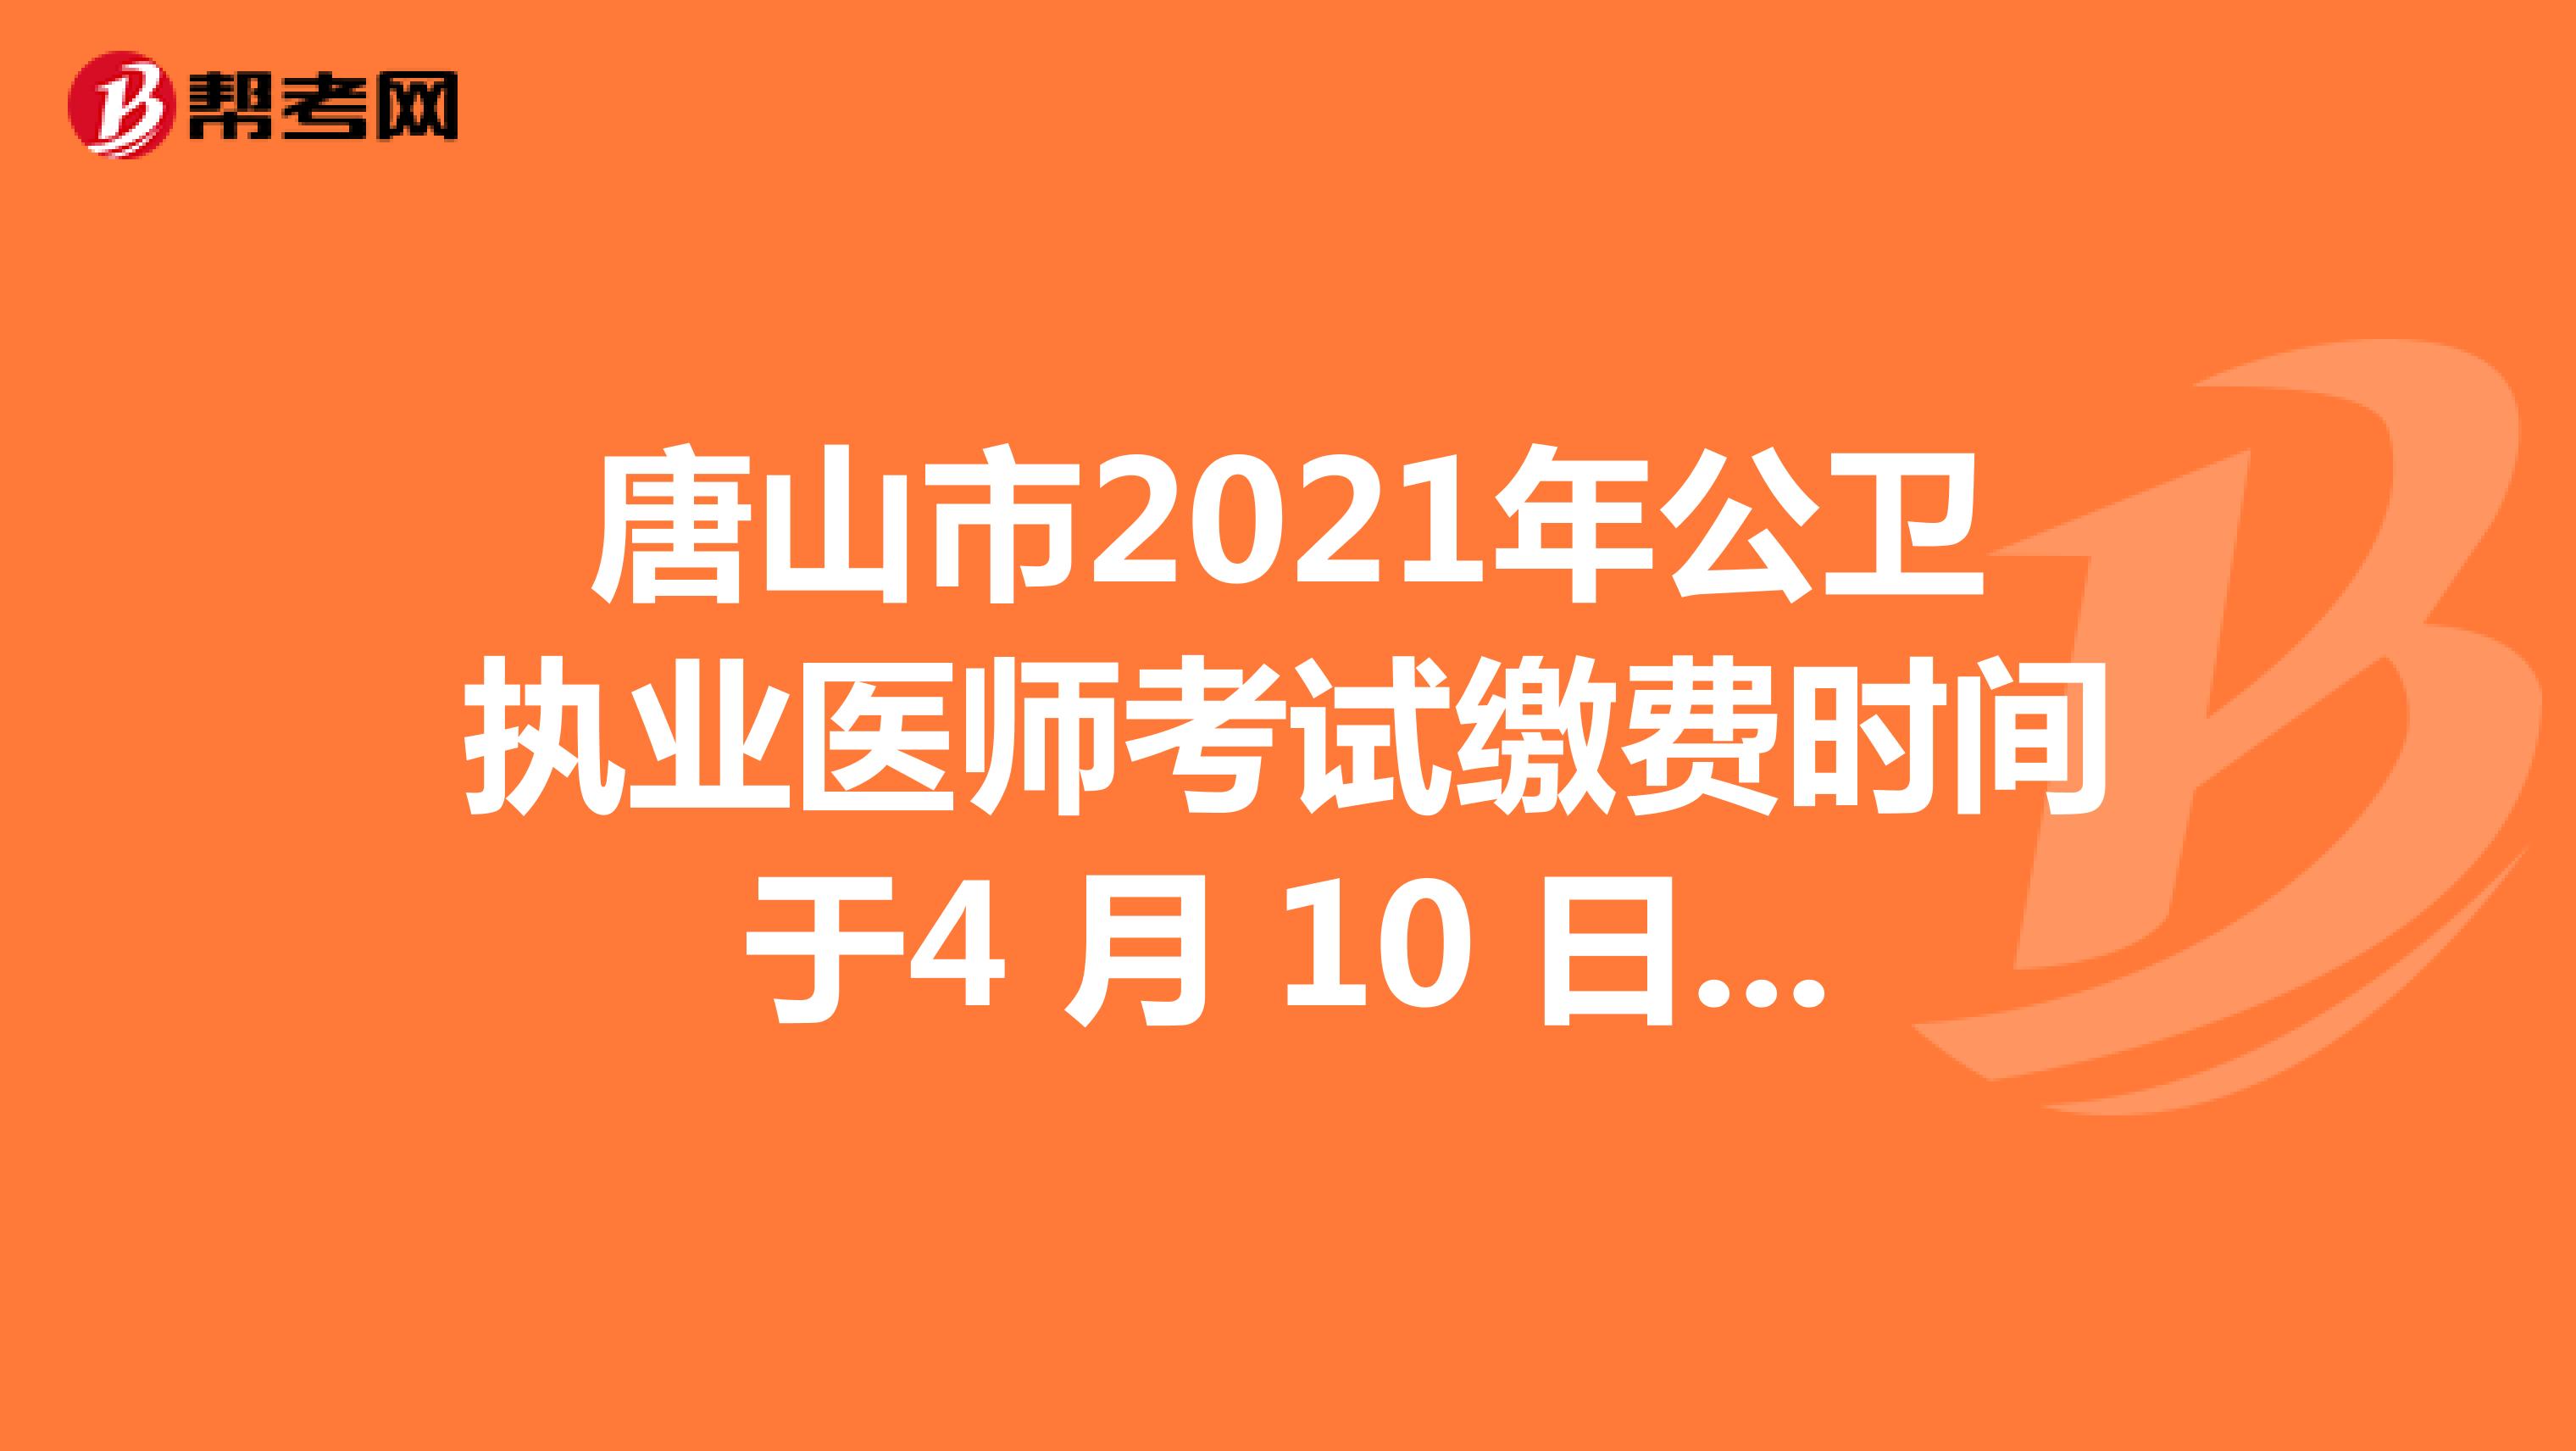 唐山市2021年公卫执业医师考试缴费时间于4 月 10 日截止